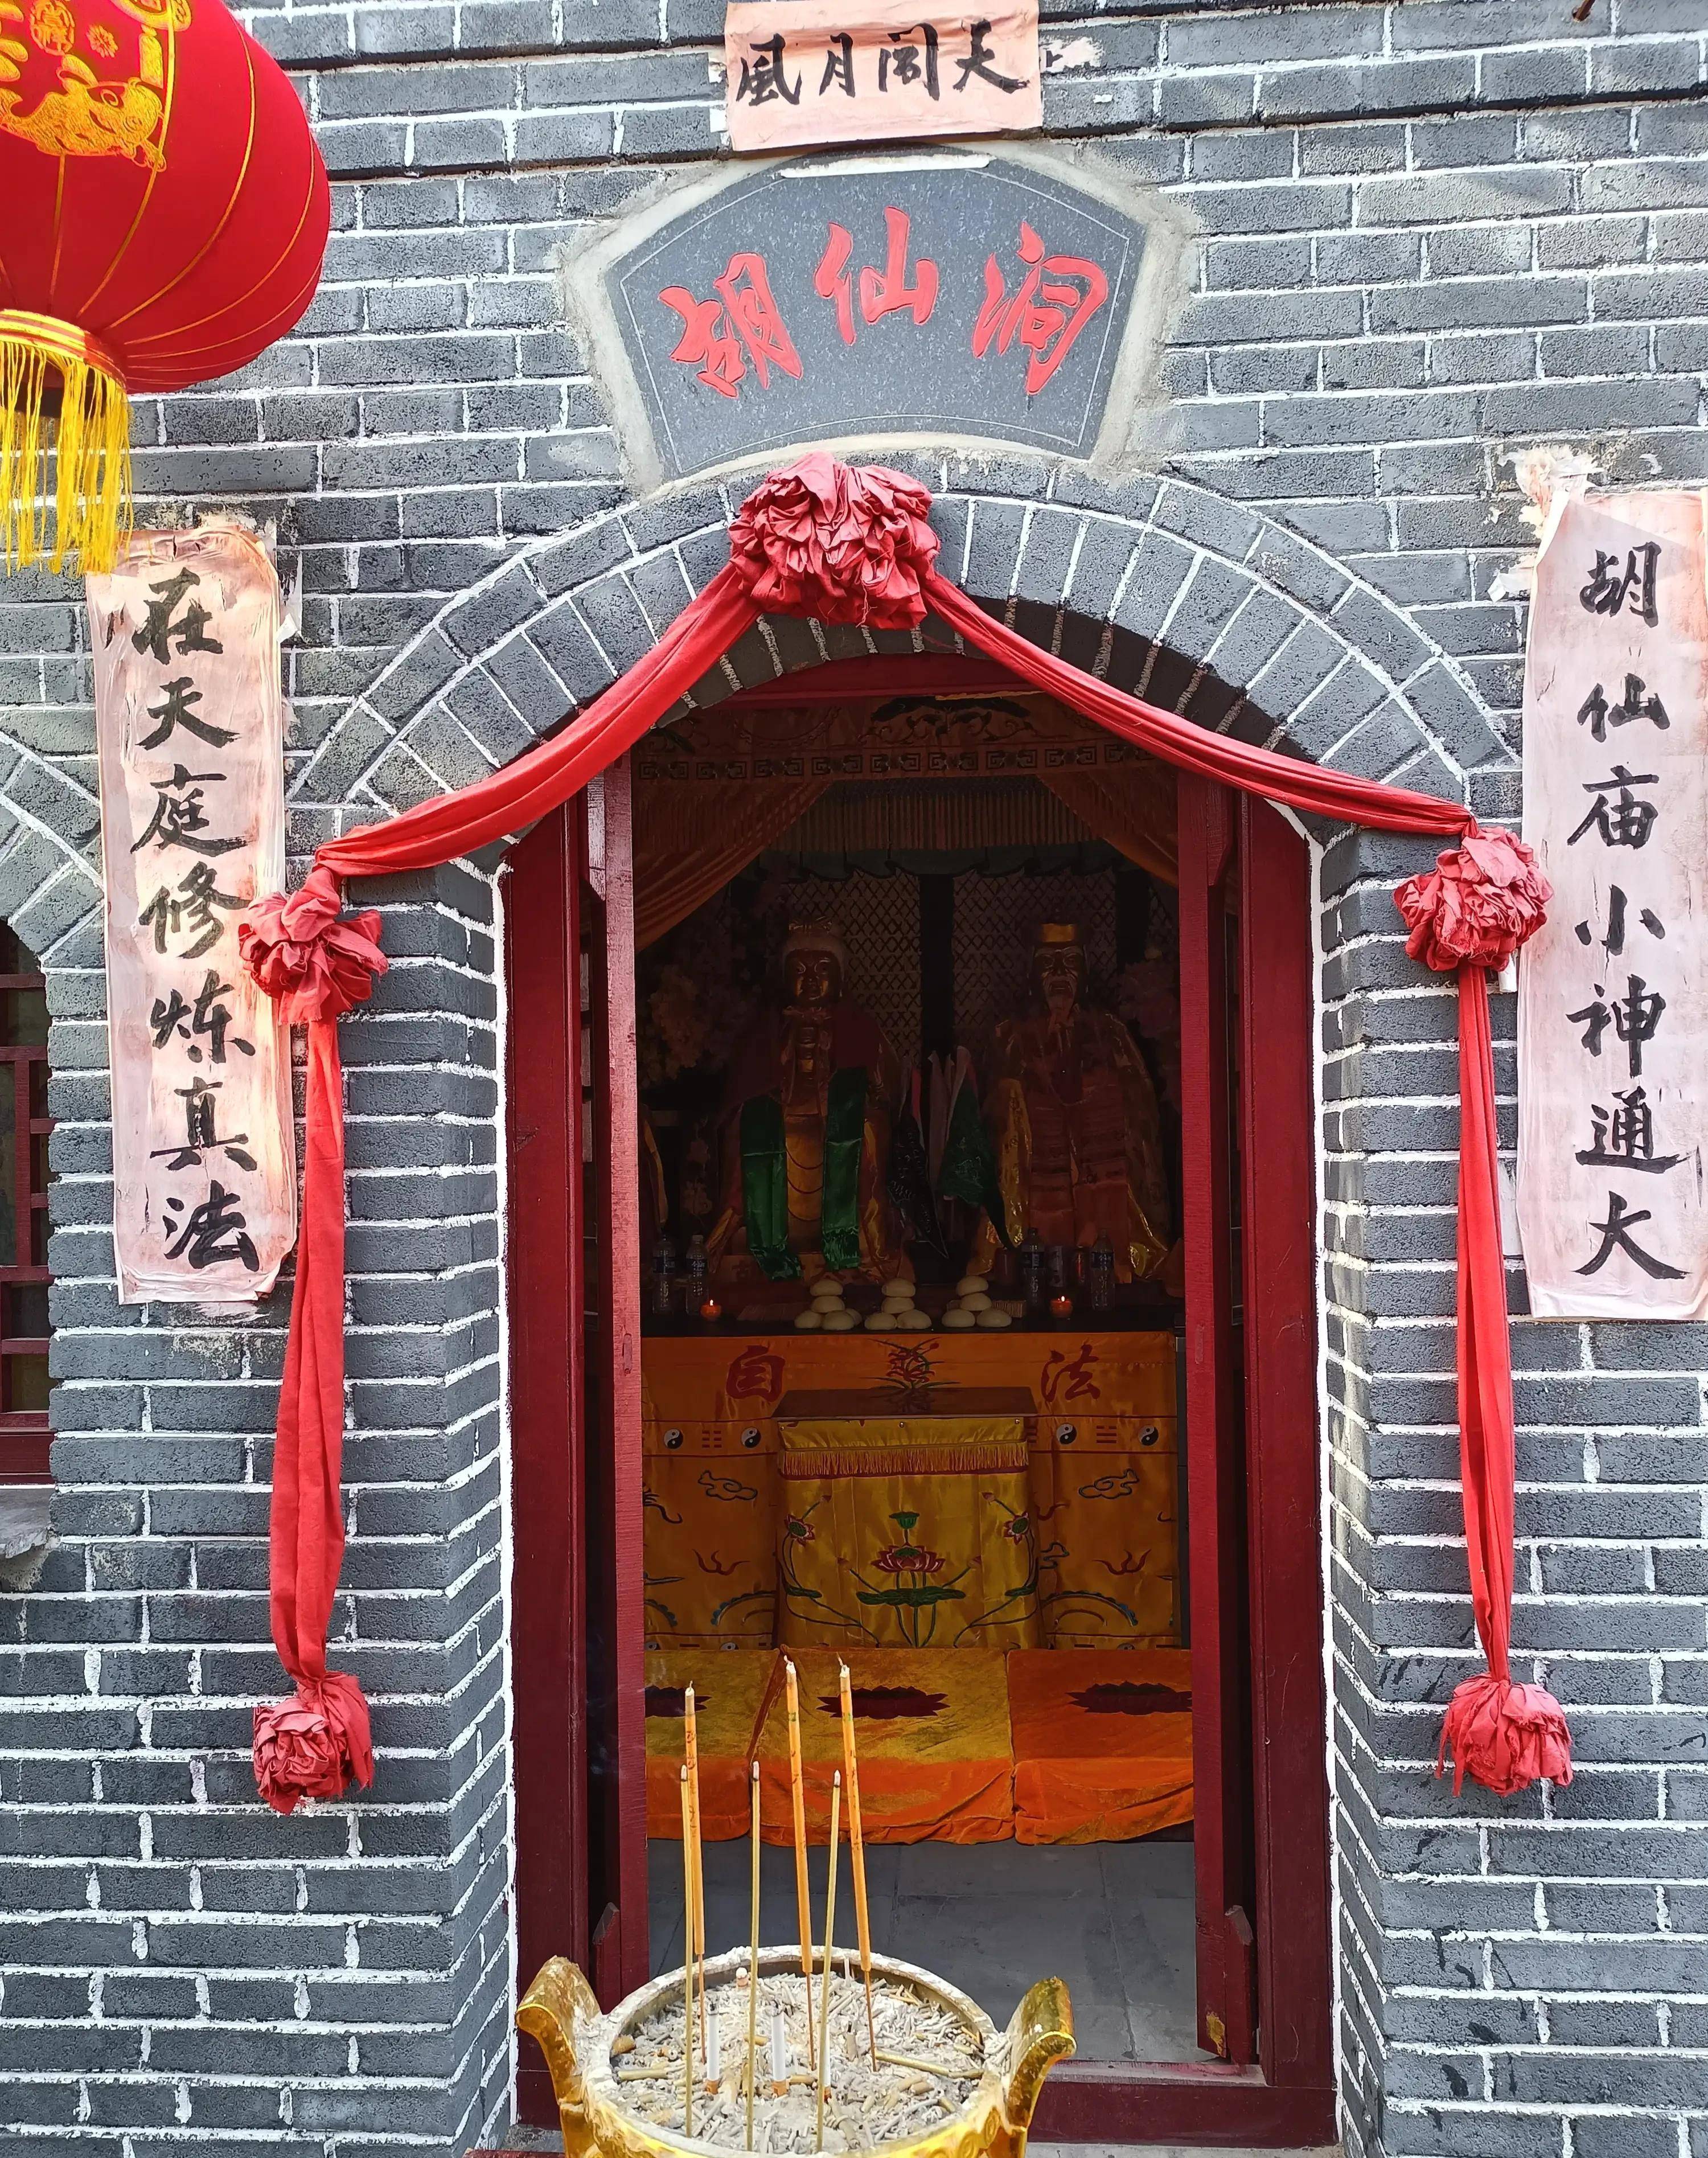 这座狐仙庙位于山西省阳泉市盂县西城武村,2000年在狐仙庙旧址的基础